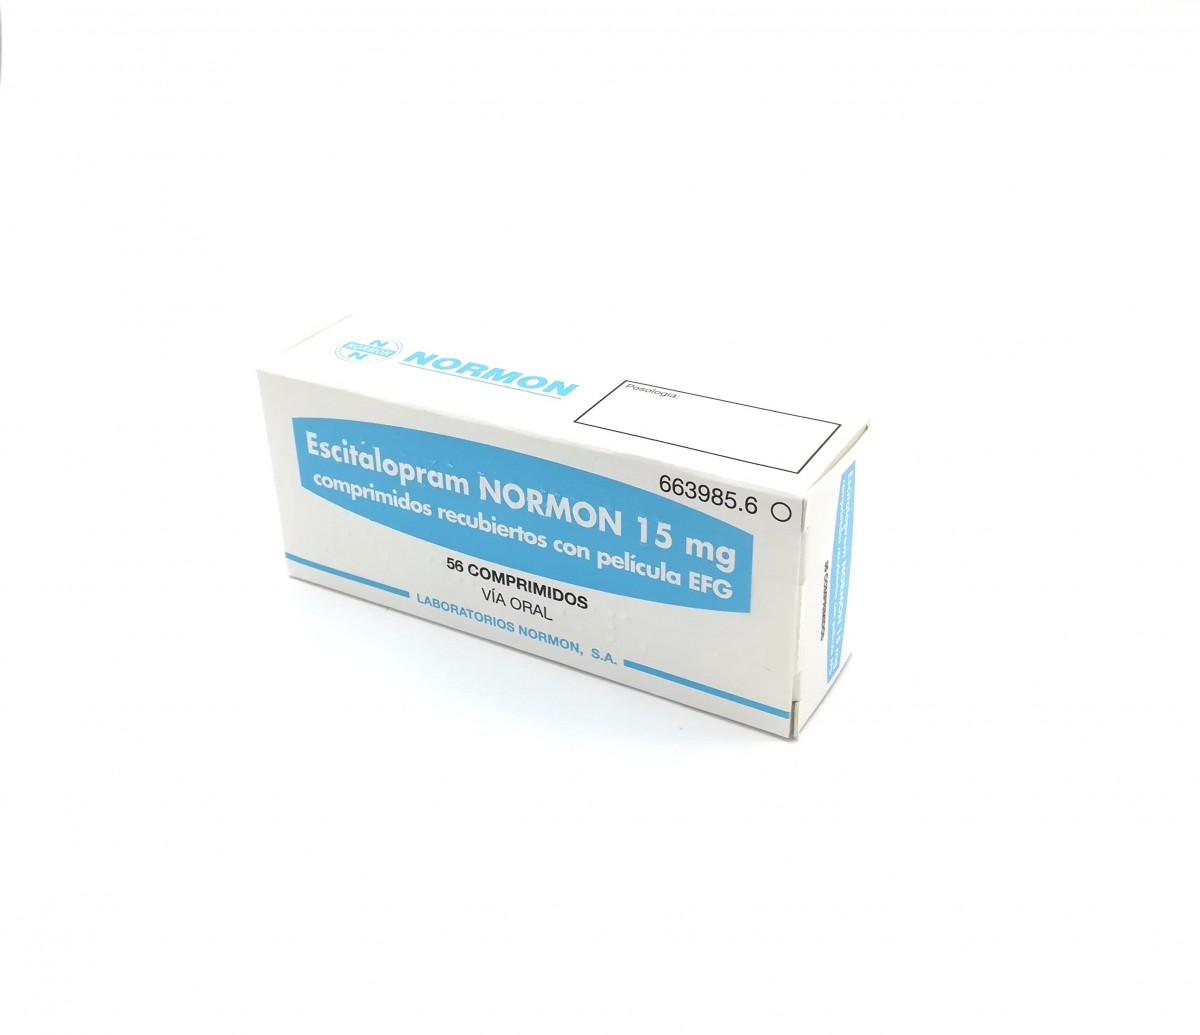 ESCITALOPRAM NORMON 15 mg COMPRIMIDOS RECUBIERTOS CON PELICULA EFG, 28 comprimidos fotografía del envase.